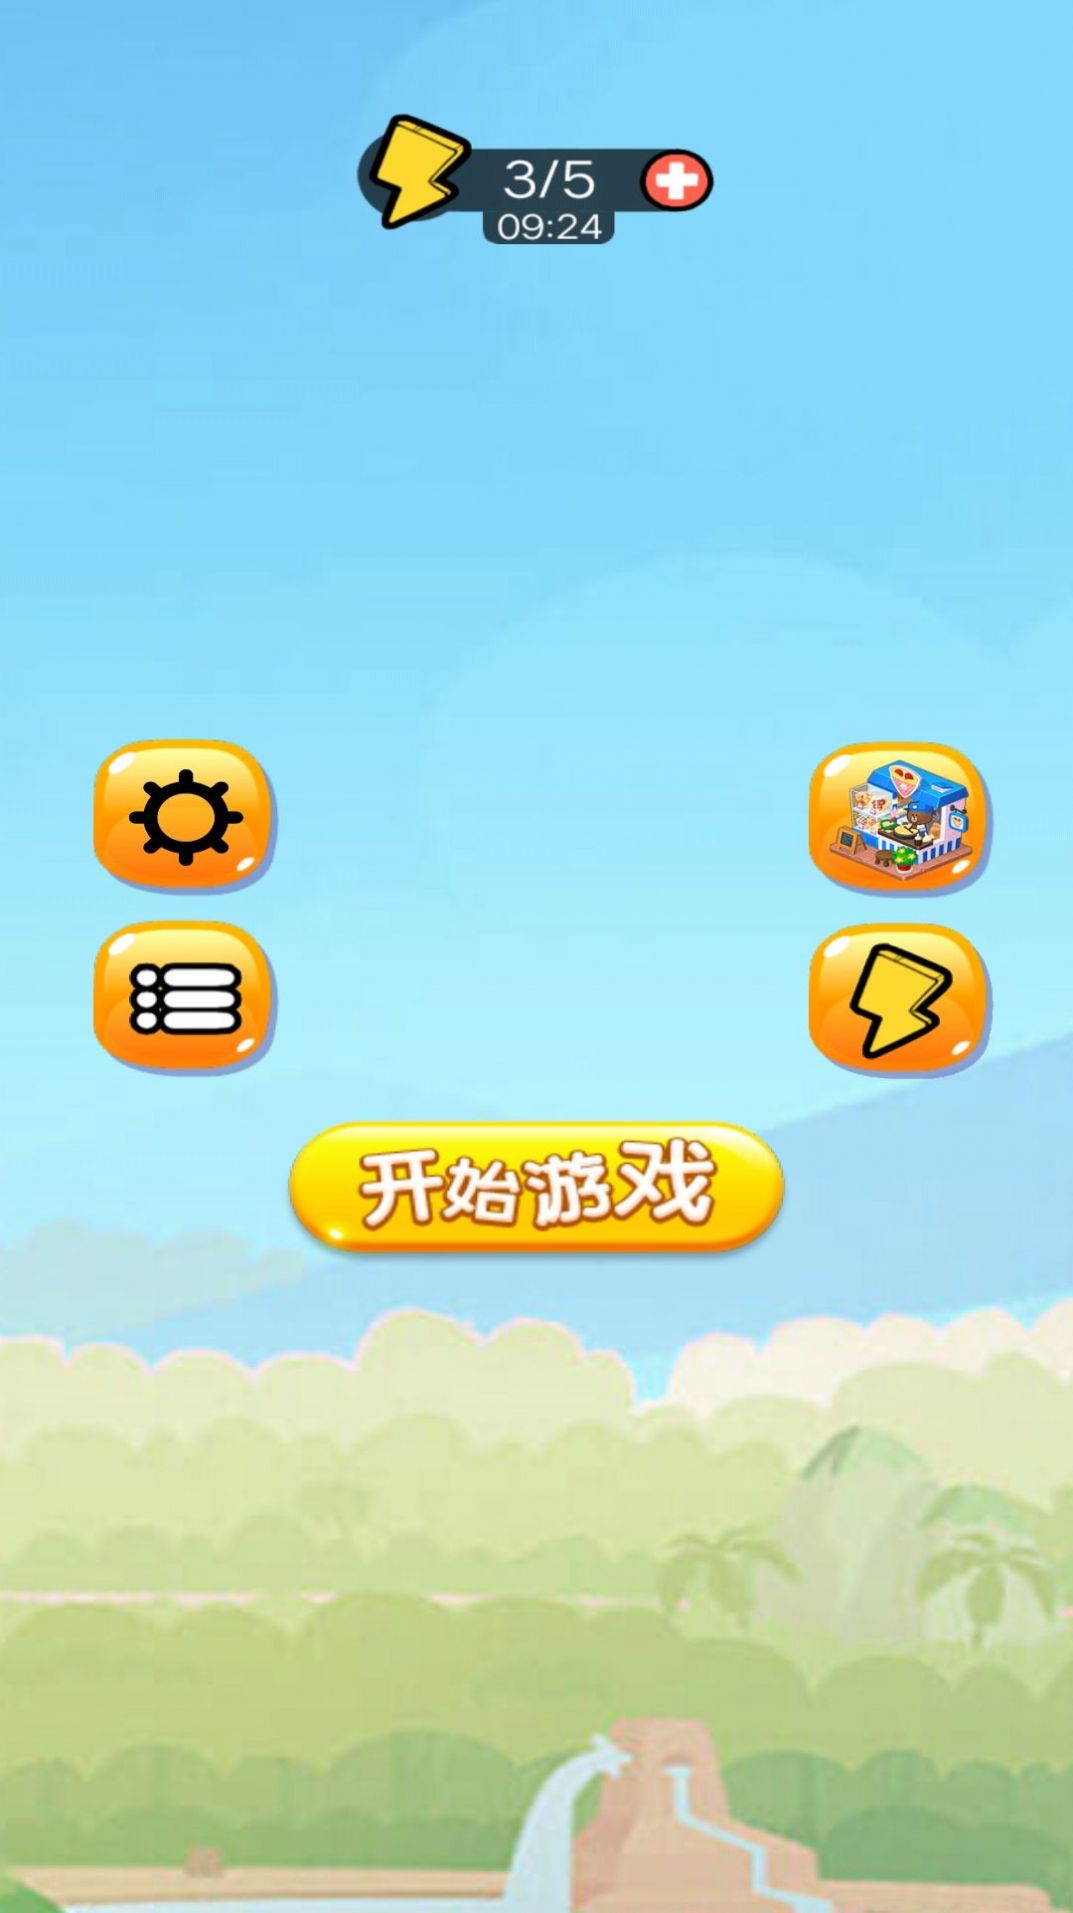 苹果蛇大闯关游戏官方版下载 v1 安卓版 2